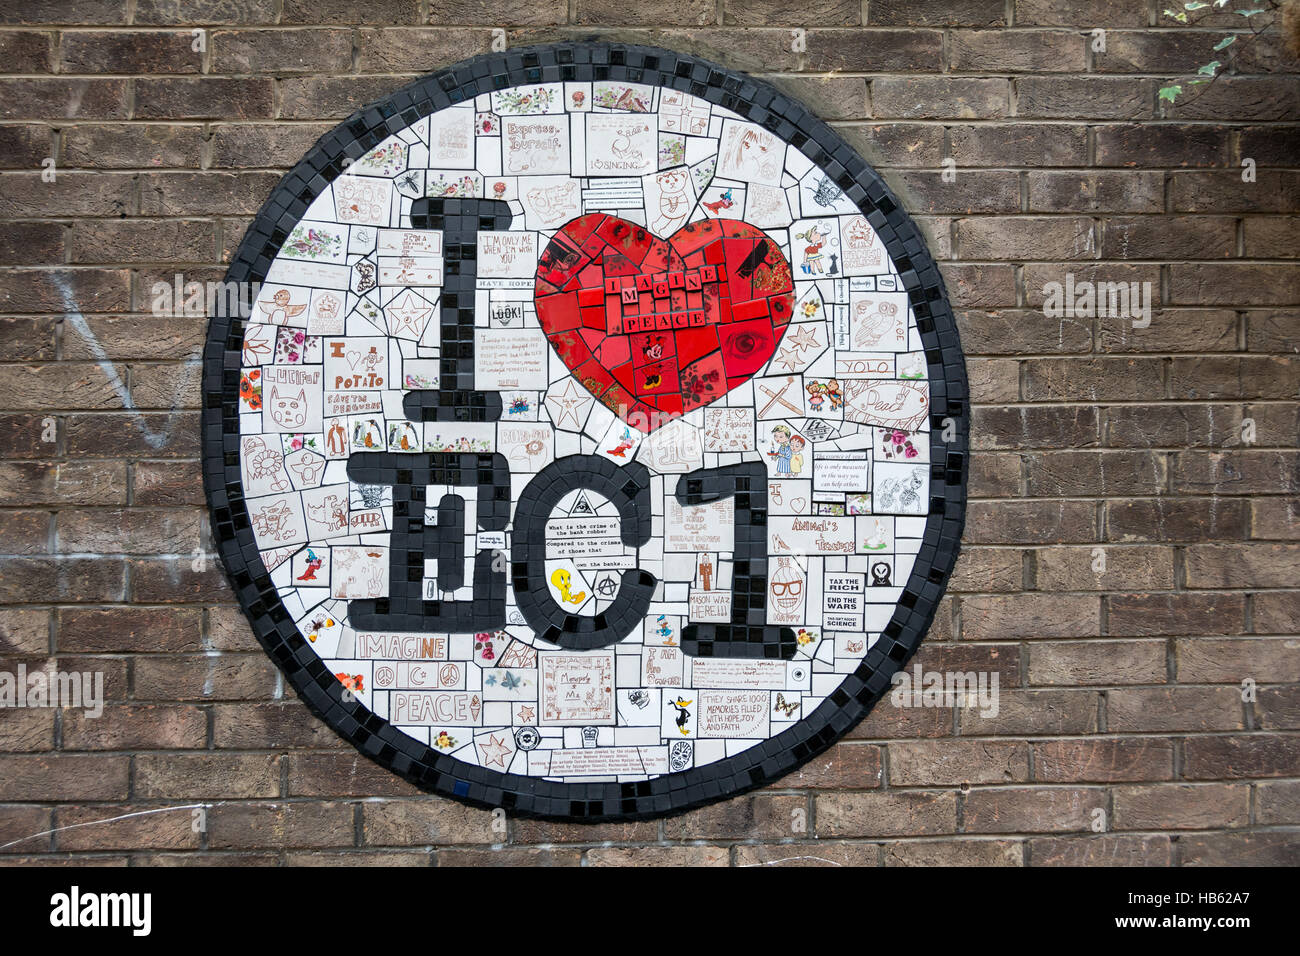 I Love EC1 symbol in London's EC1 postal district Stock Photo